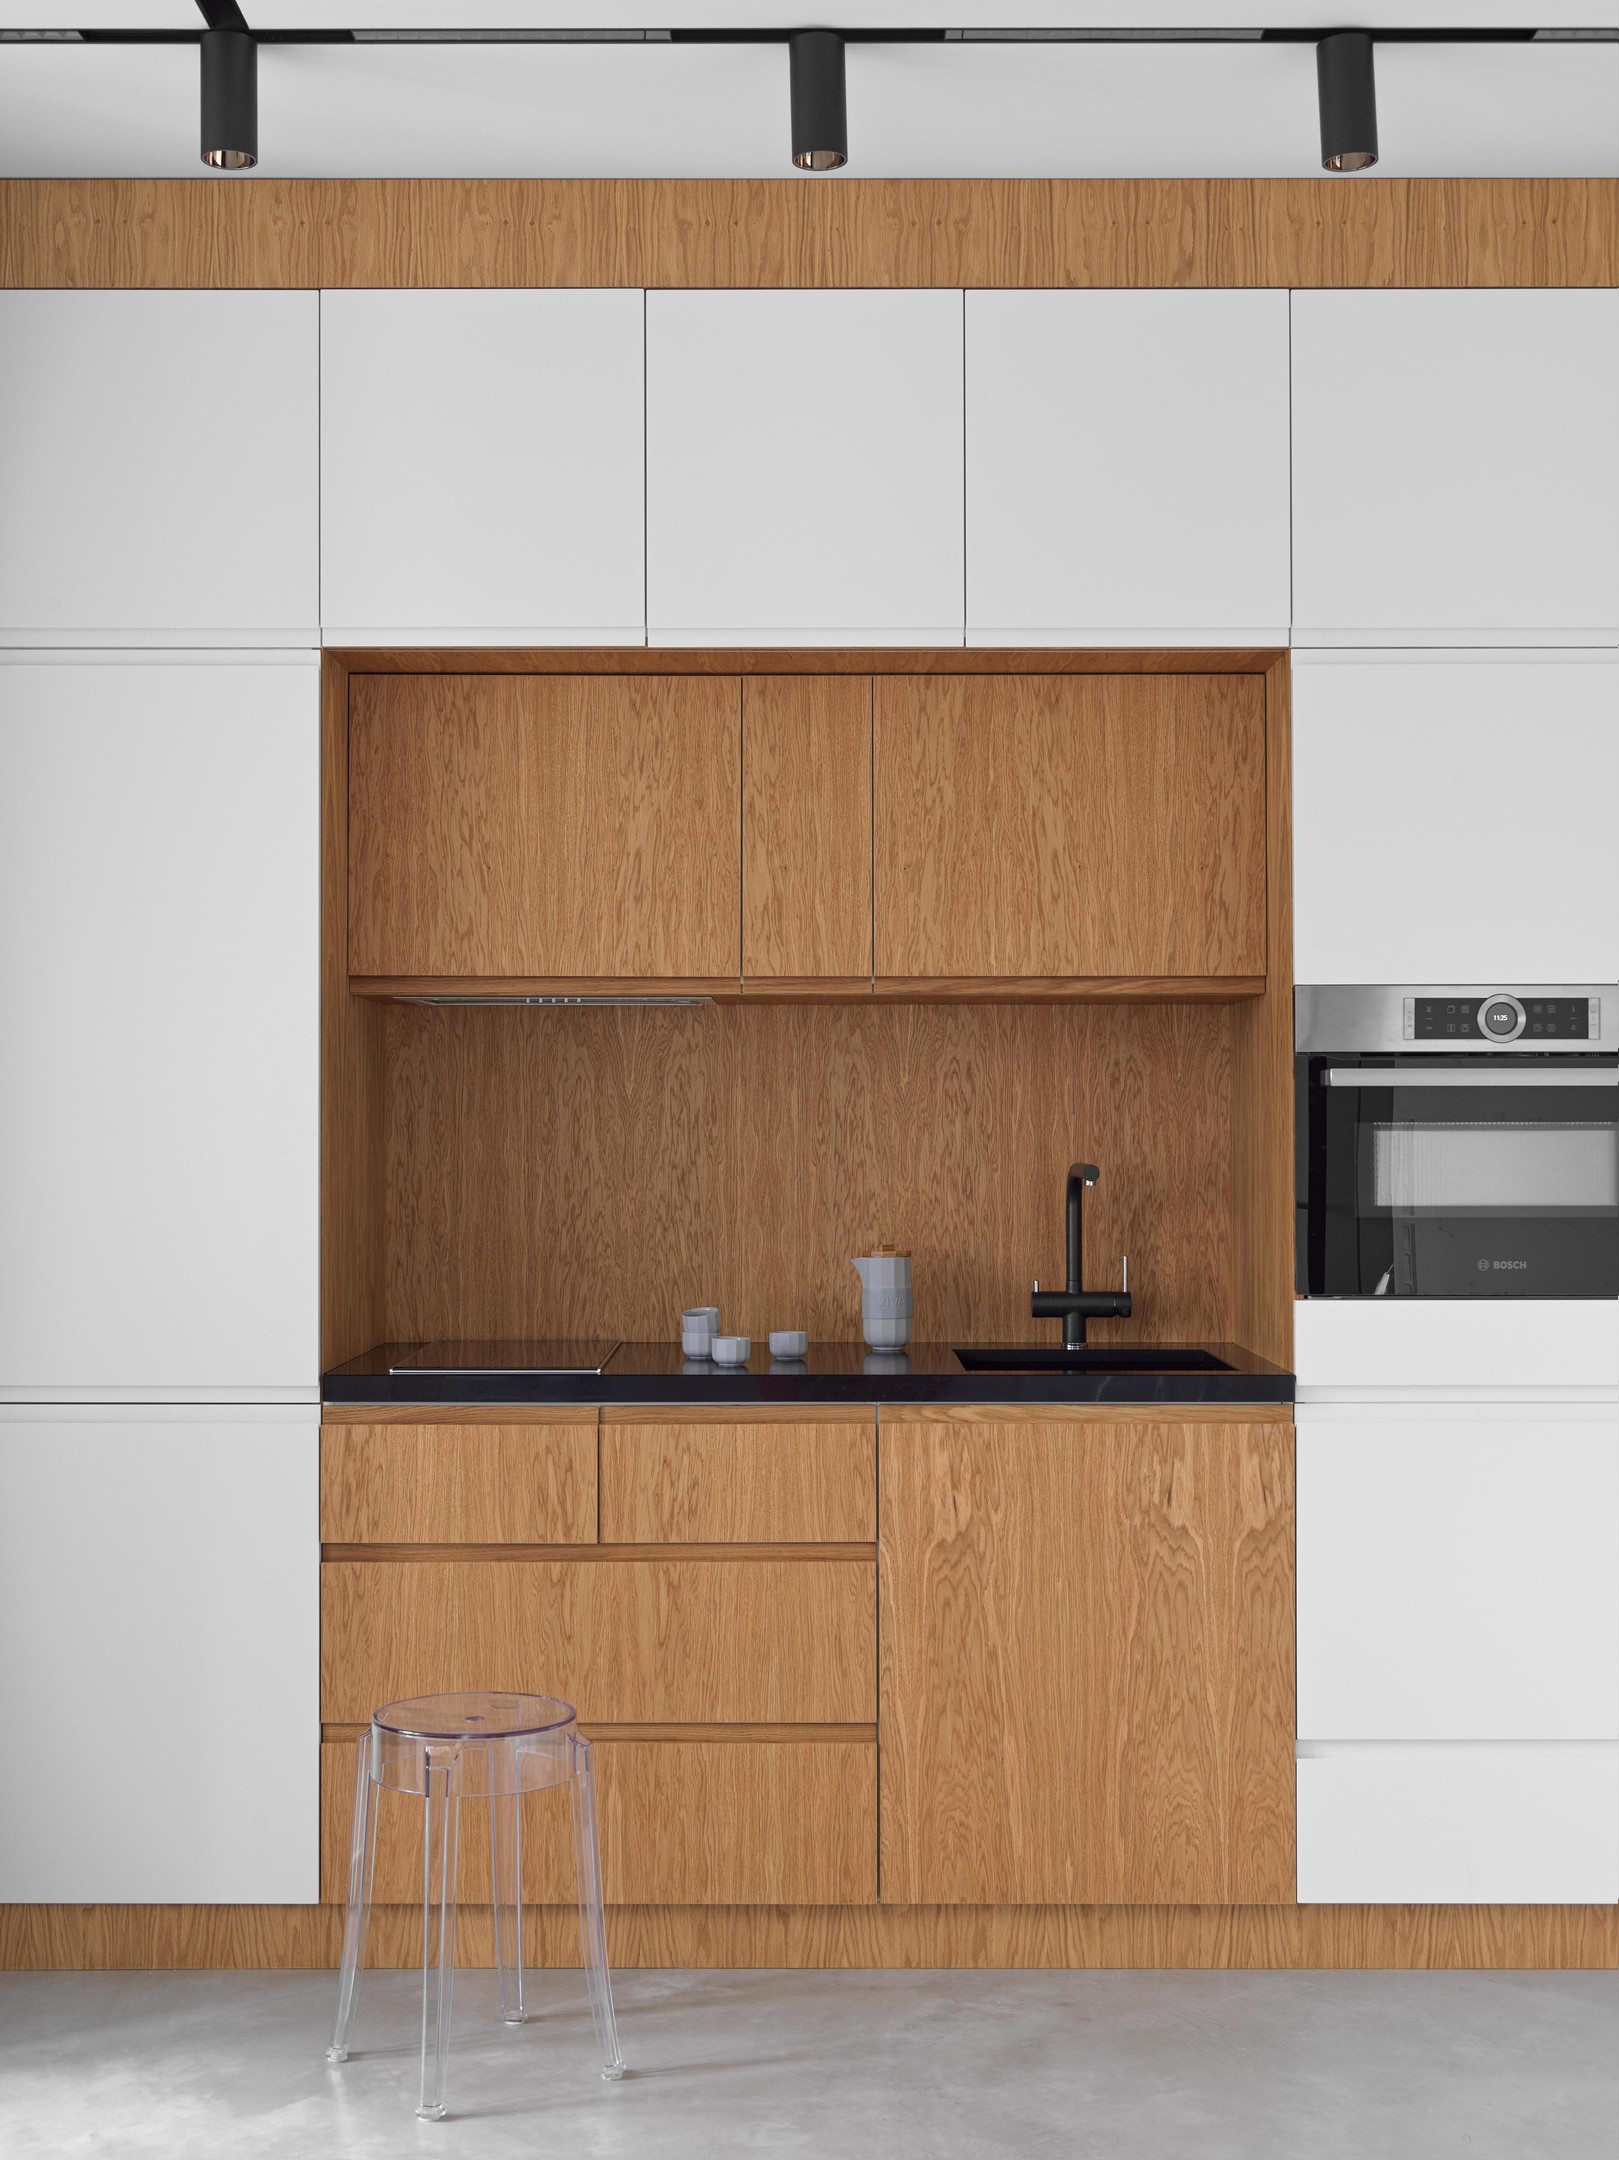 Phòng bếp kiểu chữ I tạo lối đi thông thoáng, bao quanh bếp nấu là hệ thống tủ lưu trữ ngăn nắp với sự tương phản giữa tone màu trắng và gỗ mộc mạc.